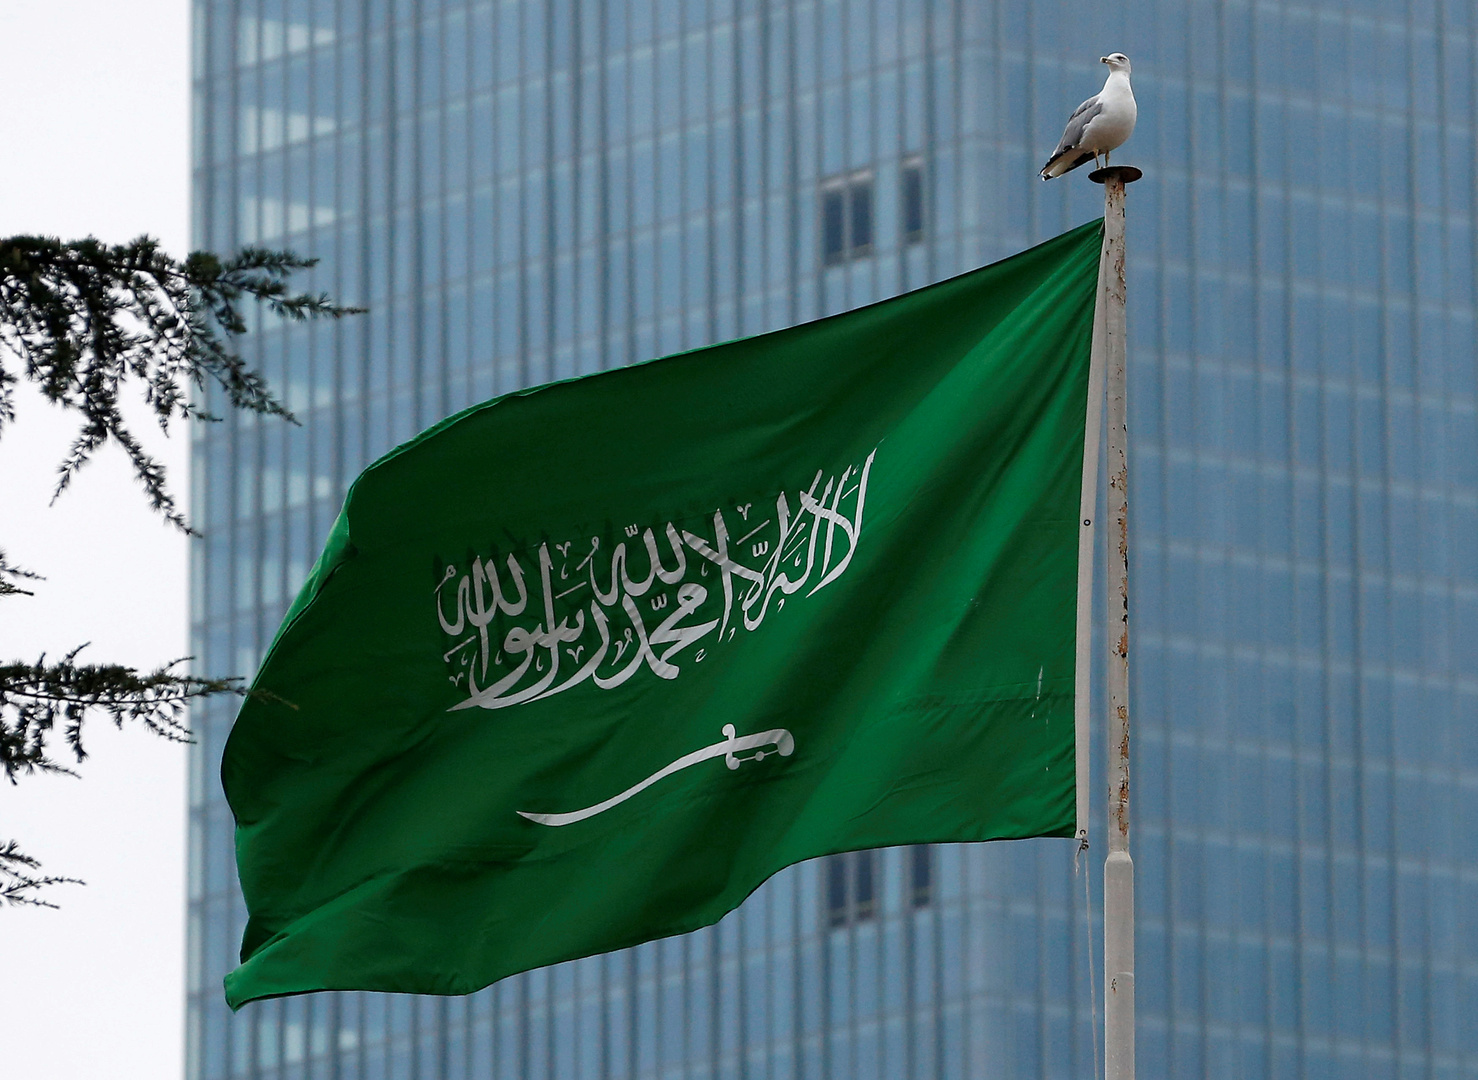 السعودية تستدعي سفيرها في لبنان للتشاور وتطلب من سفير لبنان مغادرة المملكة خلال 48 ساعة